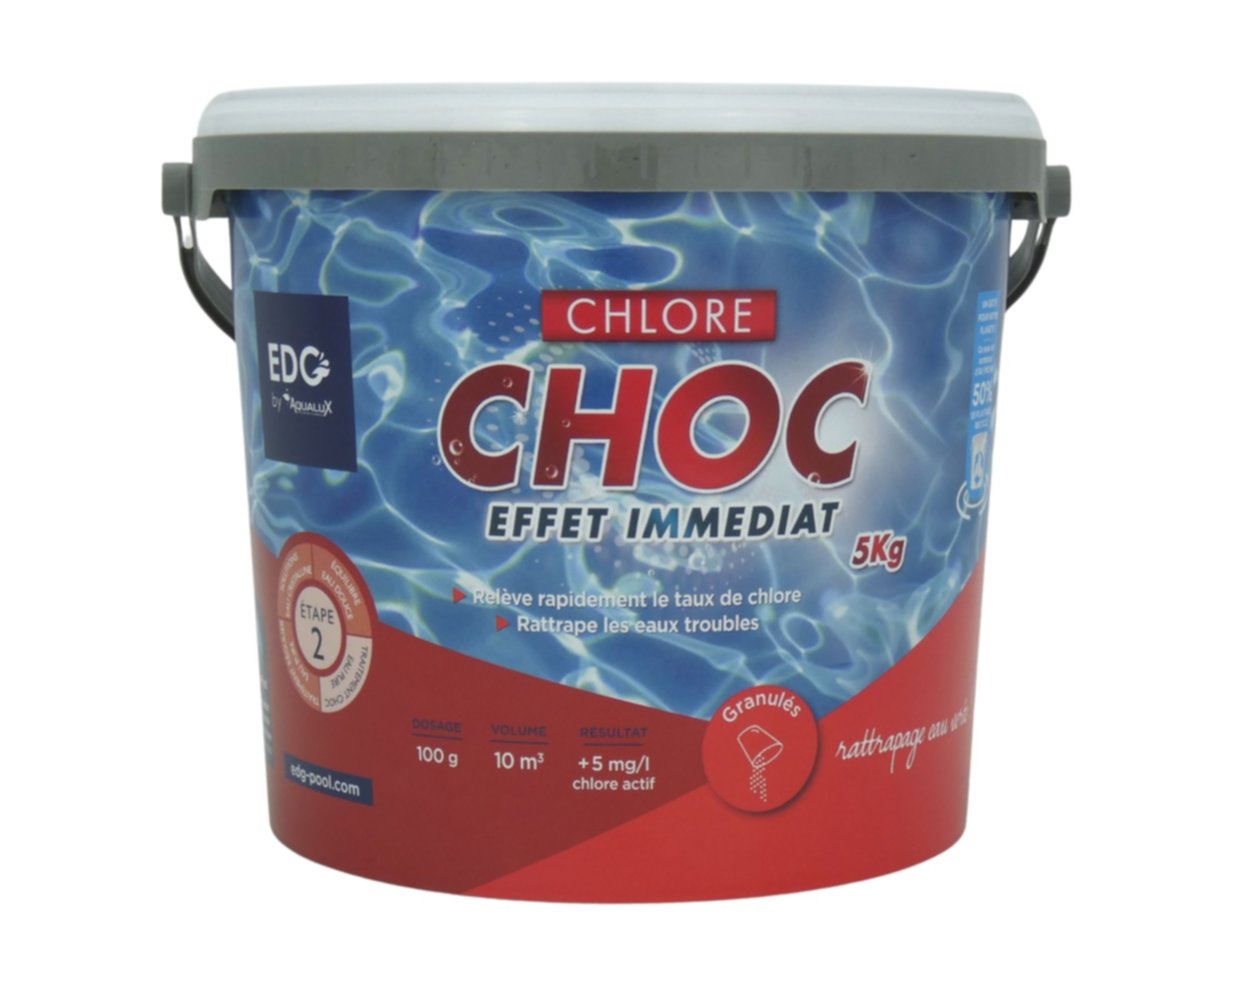 Granulés chlore choc 5 kg - EDG by AQUALUX